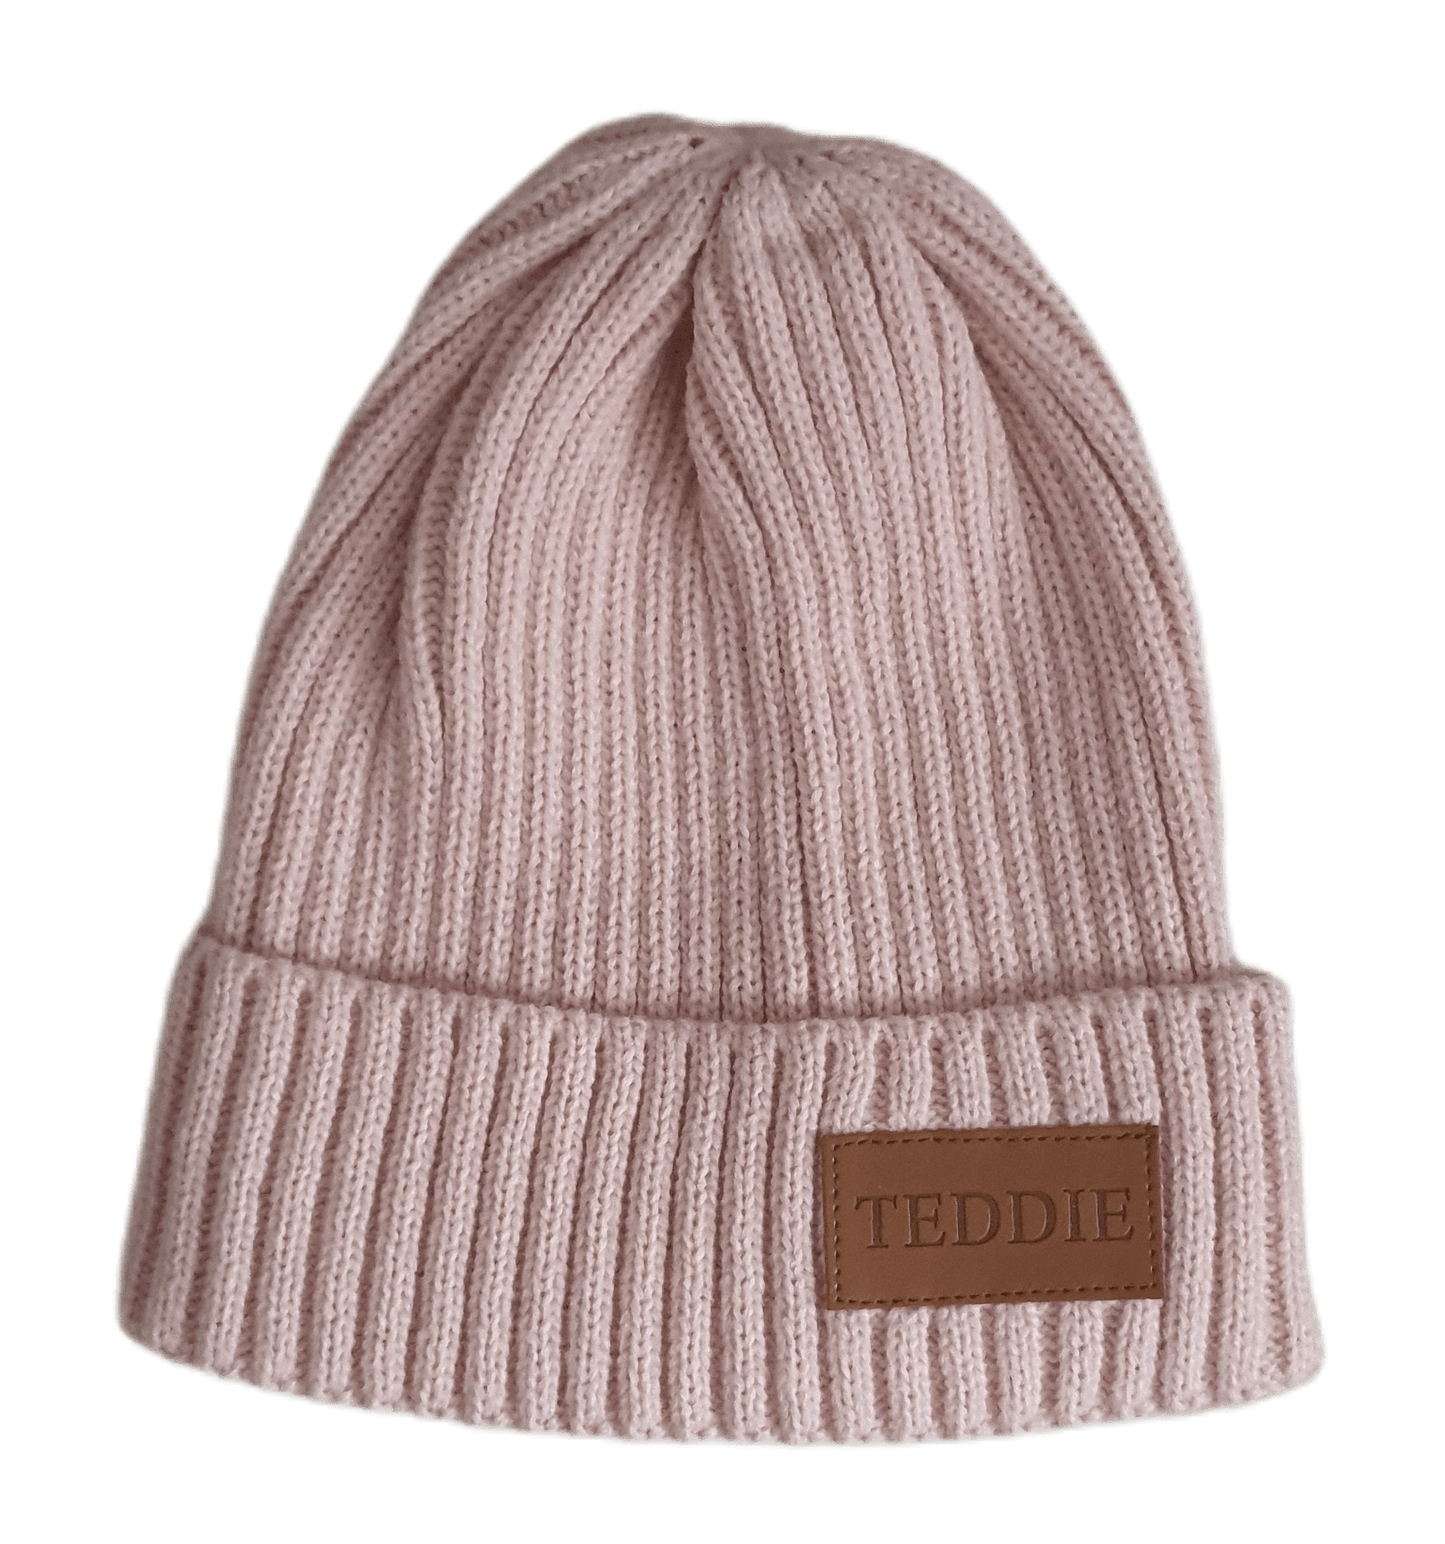 Teddie London Pink Beanie Hat